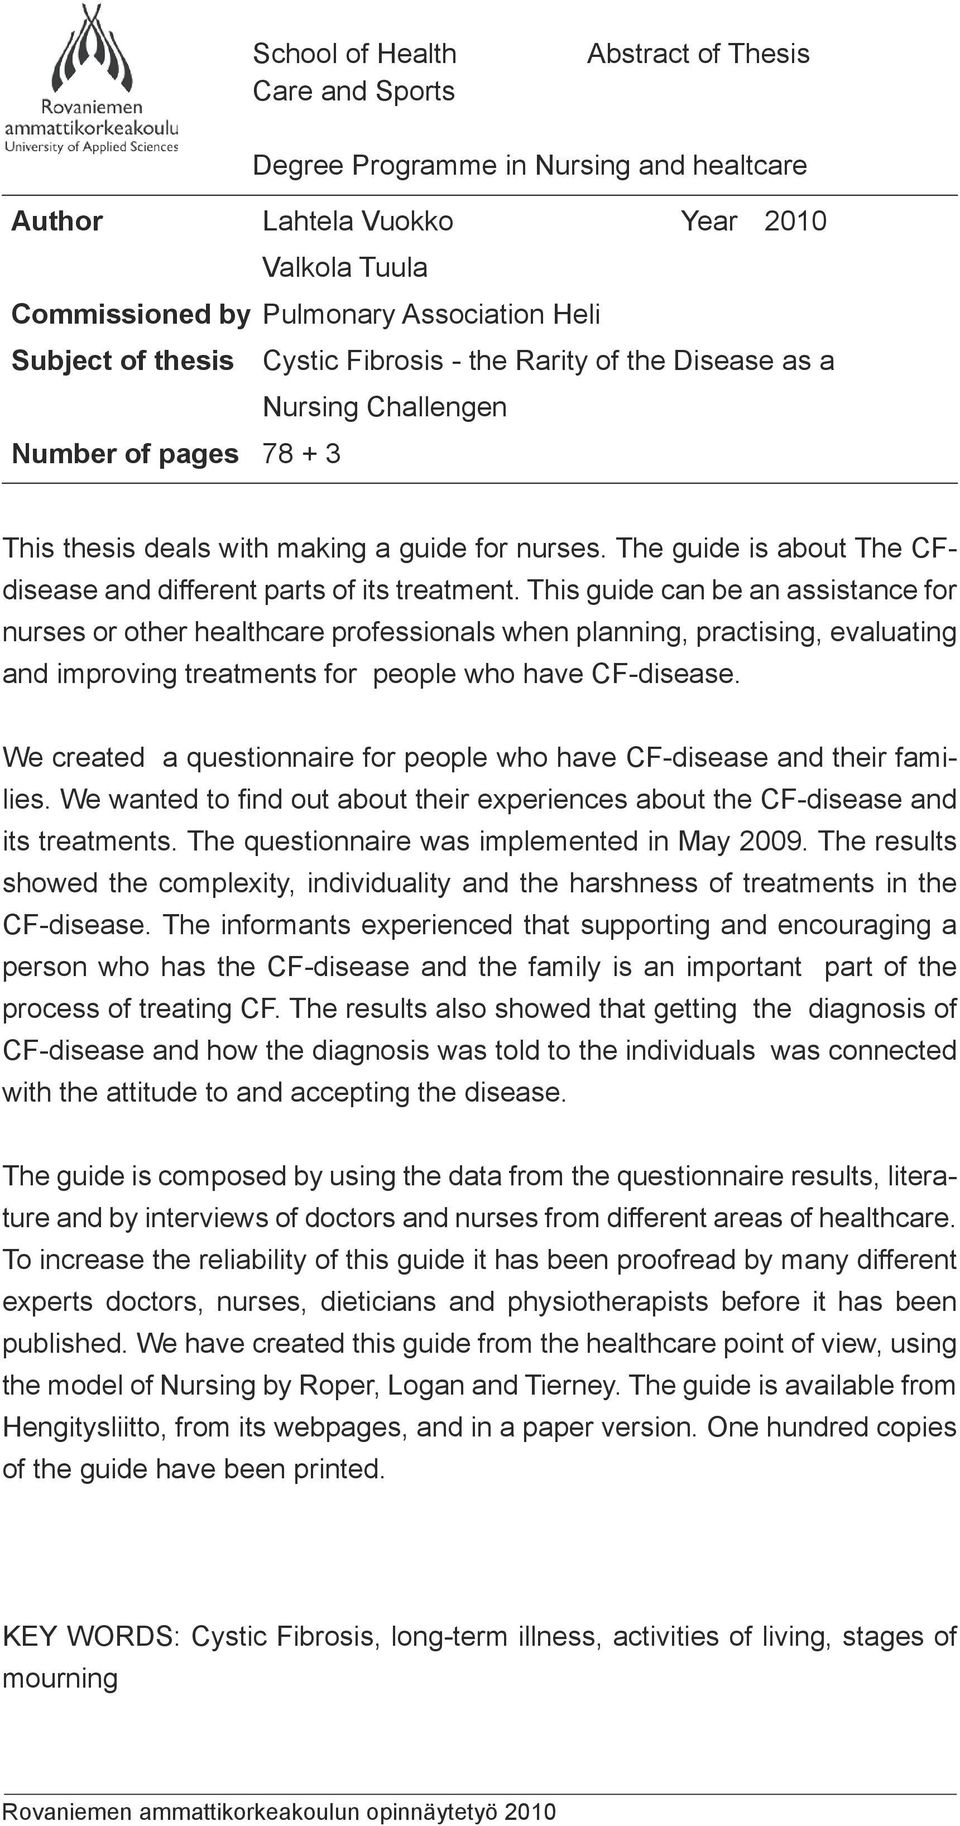 liitemäärä of thesis Cystic hoitotyössä Fibrosis - the Rarity of the Disease as a Nursing 89 + 4 Challengen Number of pages 78 + 3 TIIVISTELMÄ Opinnäytetyön tarkoituksena on laatia opaskirjanen